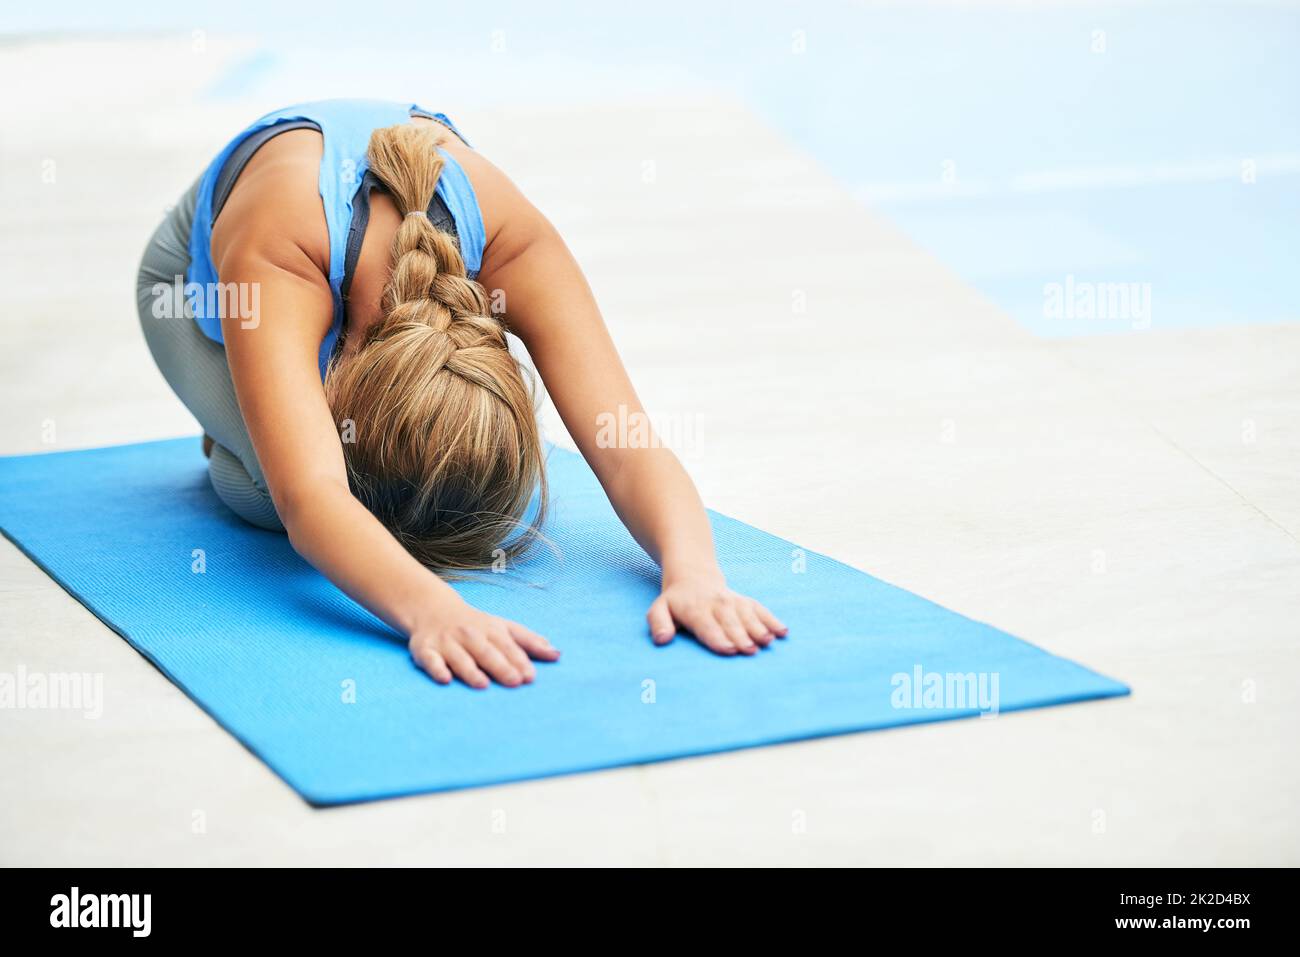 Beugen Sie sich vor einem gesünderen Lebensstil. Aufnahme einer jungen Frau, die Yoga praktiziert. Stockfoto